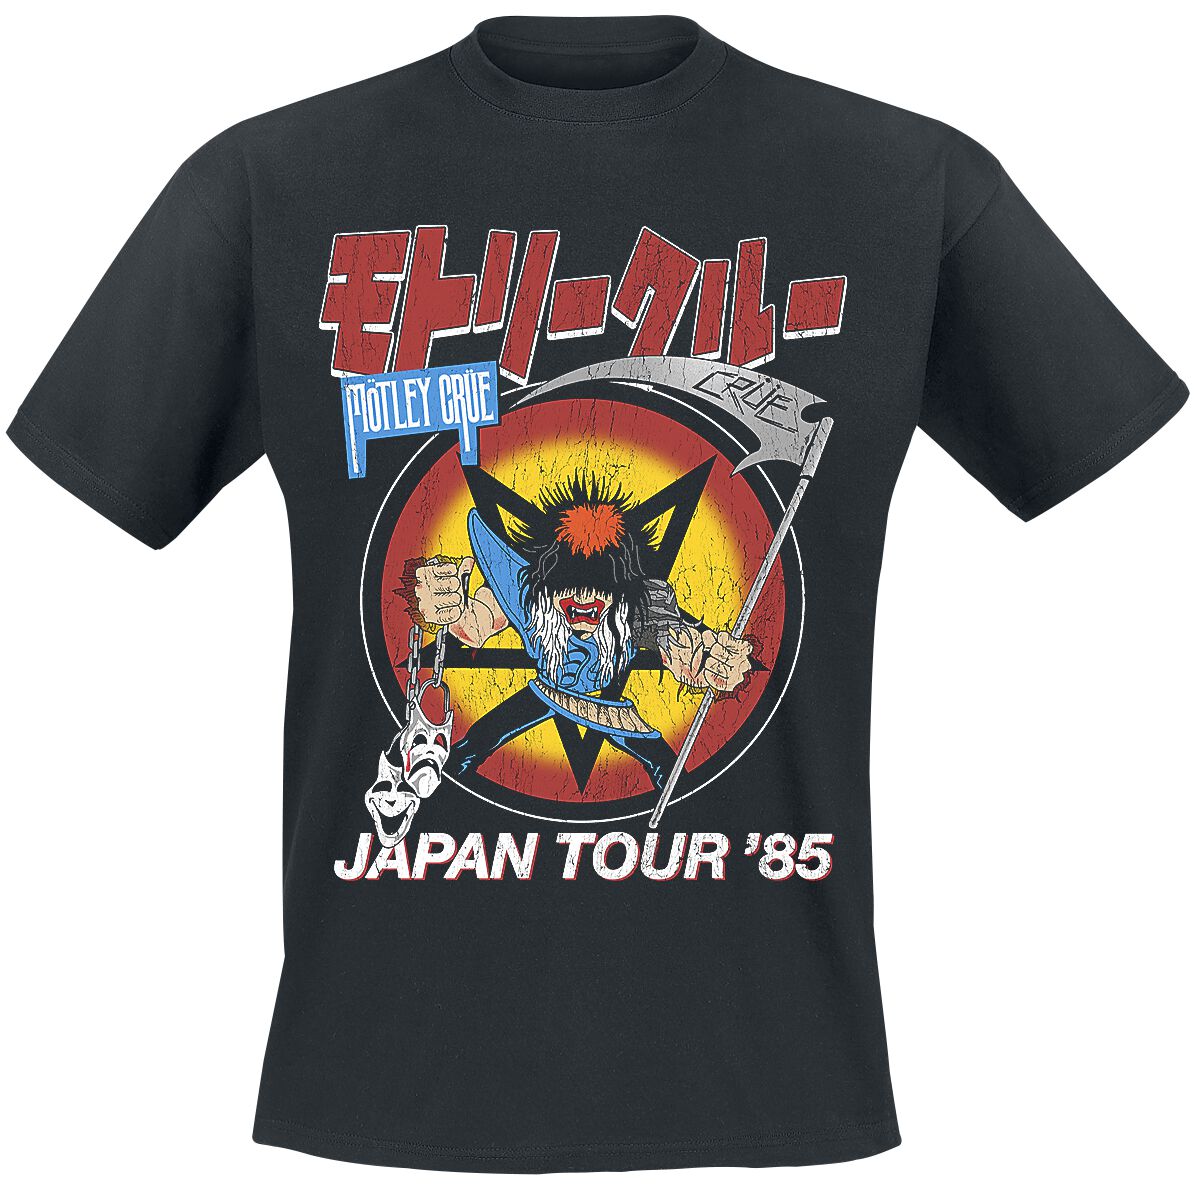 Mötley Crüe T-Shirt - Japan Tour - S bis 4XL - für Männer - Größe S - schwarz  - Lizenziertes Merchandise!